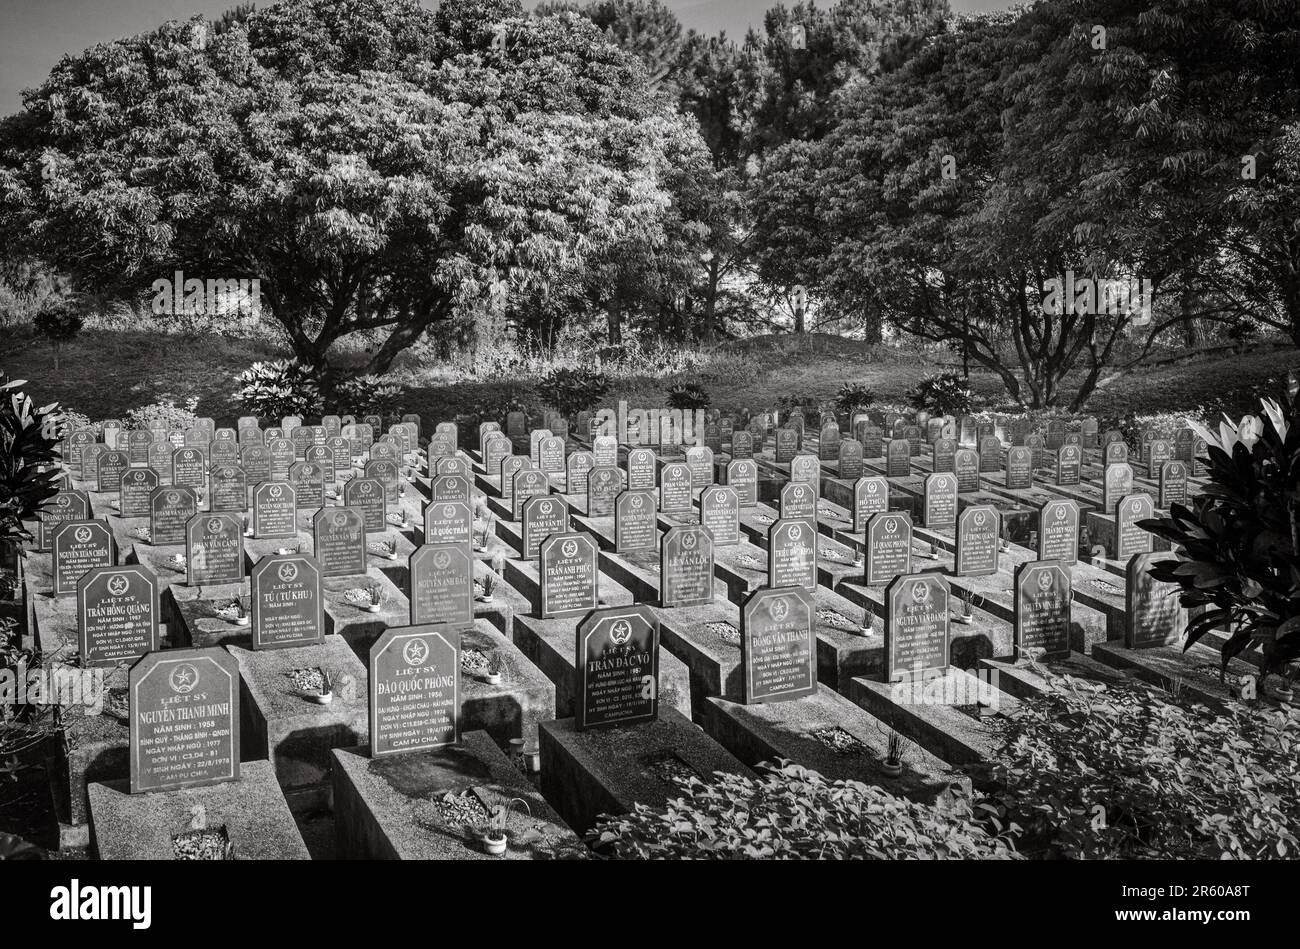 Tombe di guerra nel cimitero dei martiri di guerra a Ia Grai, provincia di Gia Lai negli altopiani centrali del Vietnam. Le tombe contengono principalmente i resti di loca Foto Stock